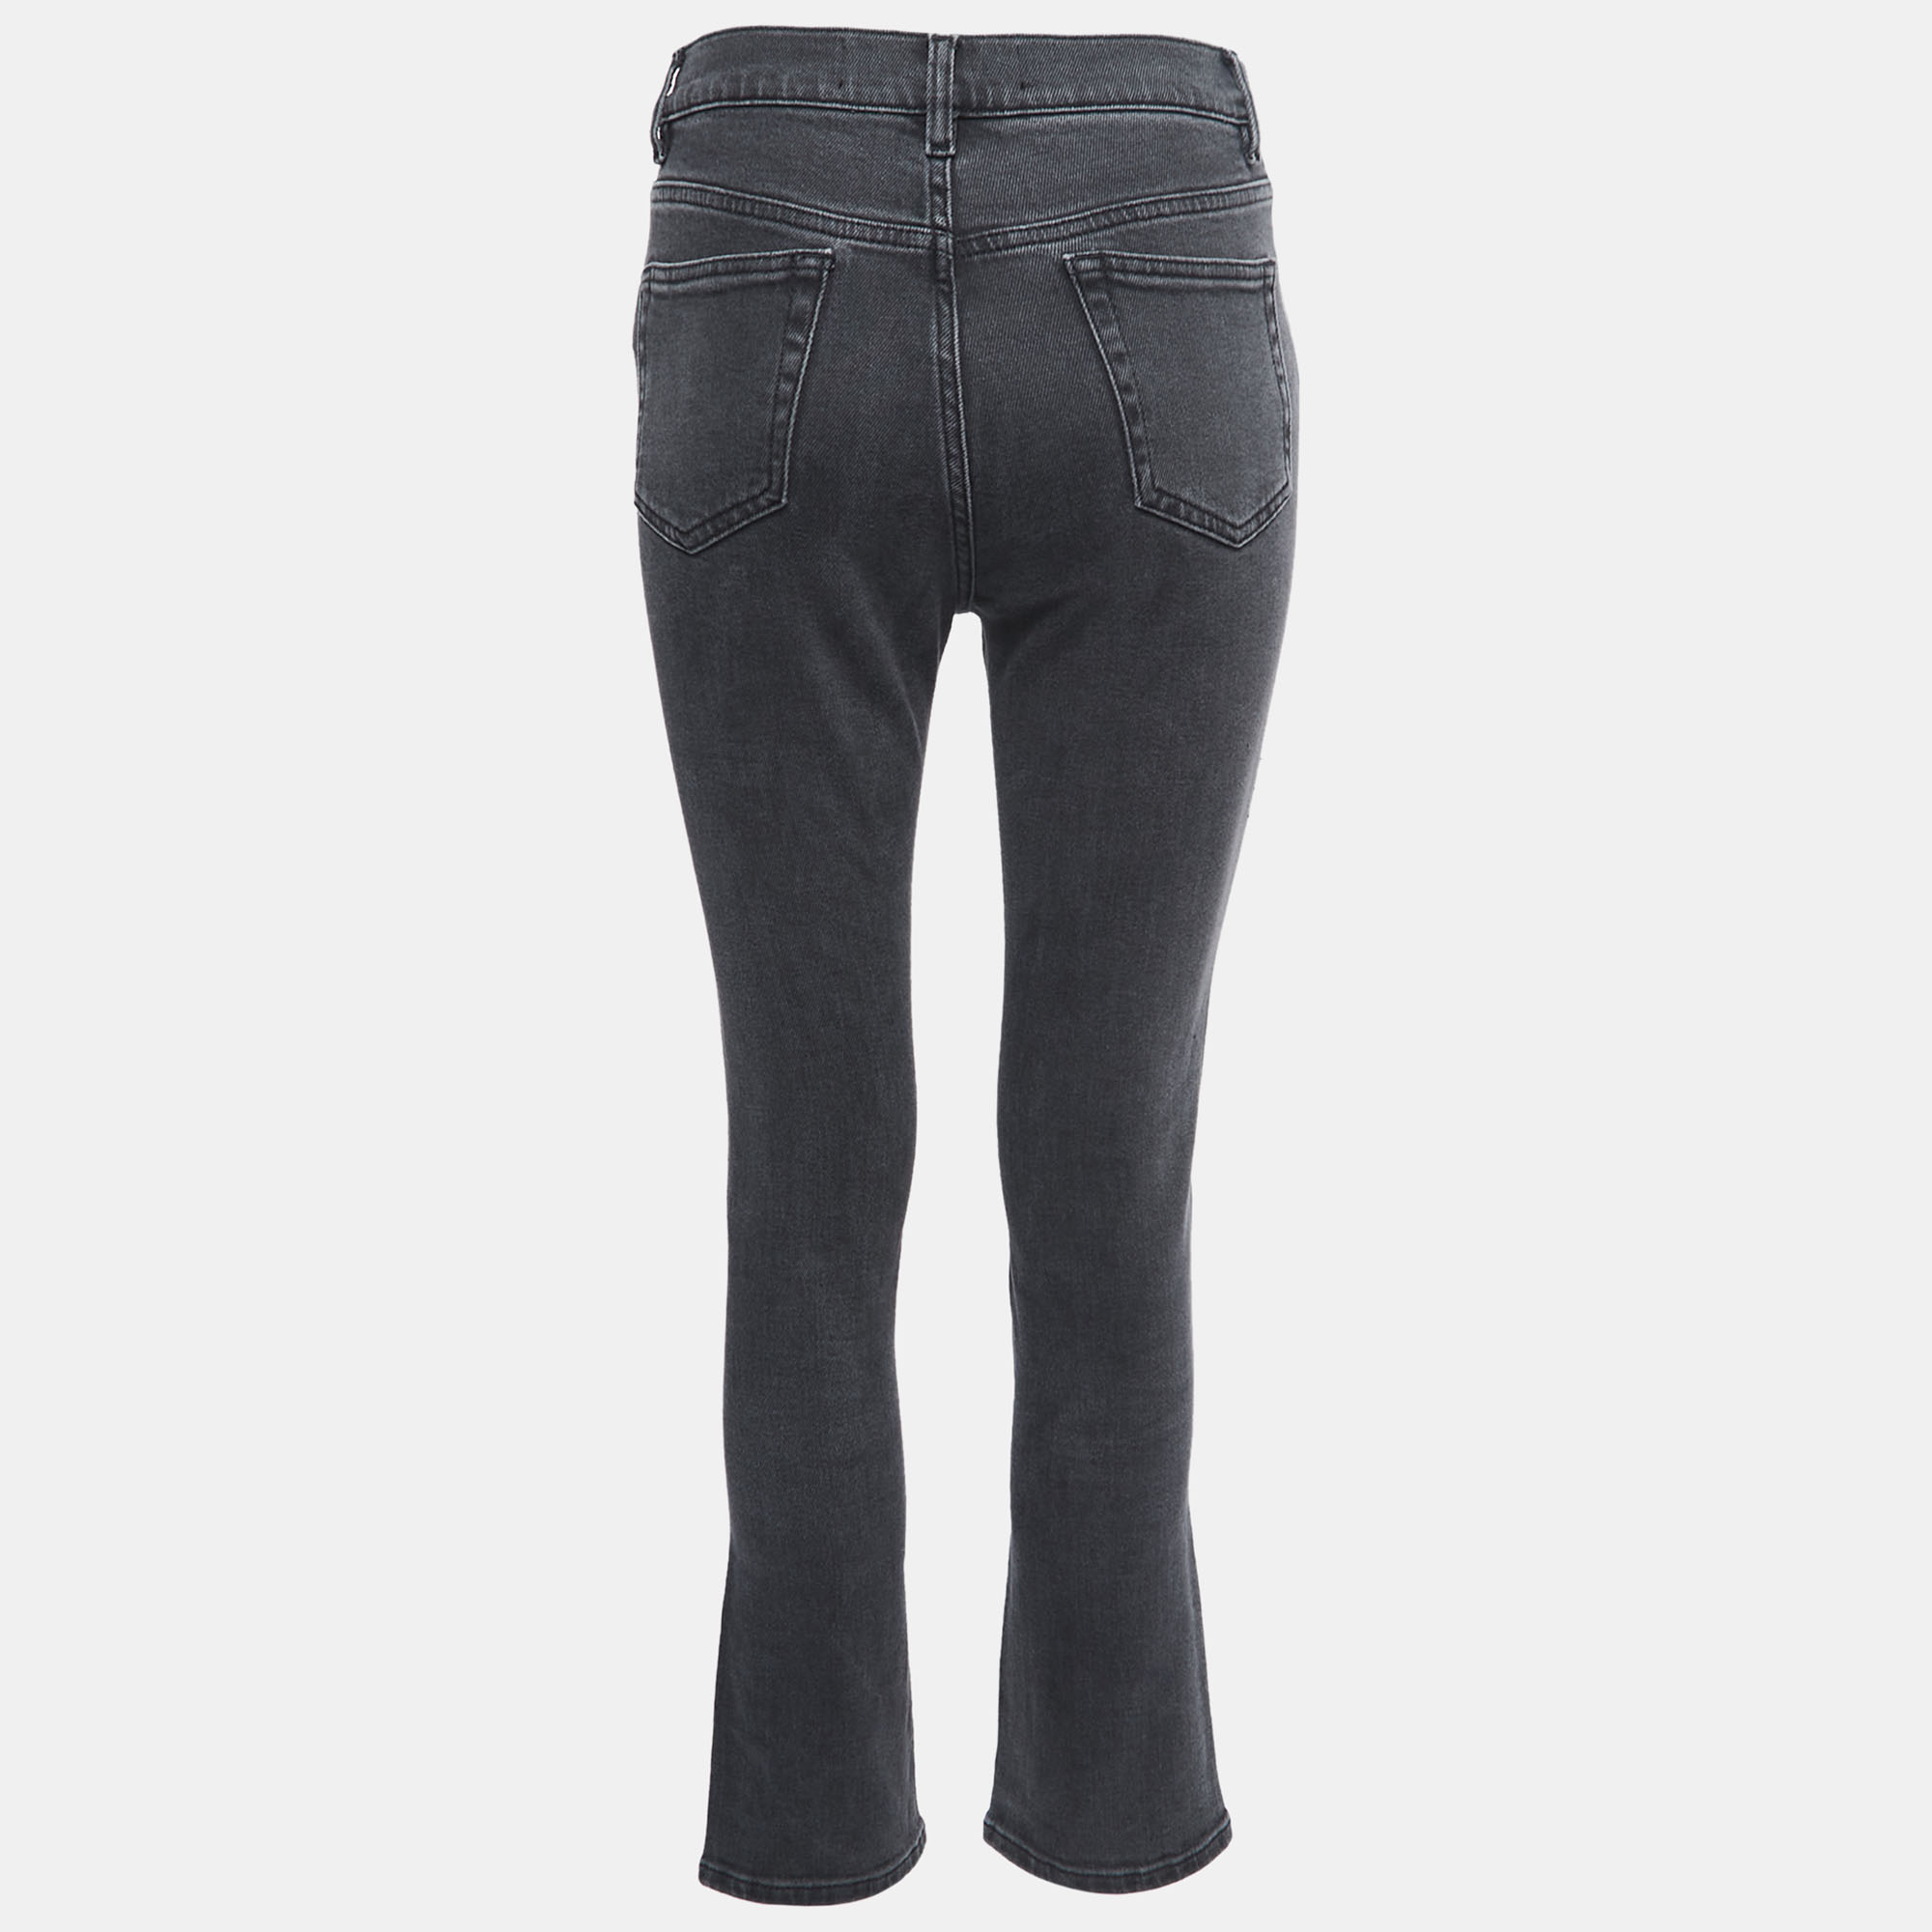 Victoria Victoria Beckham Grey Denim Studded Jeans S Waist 25